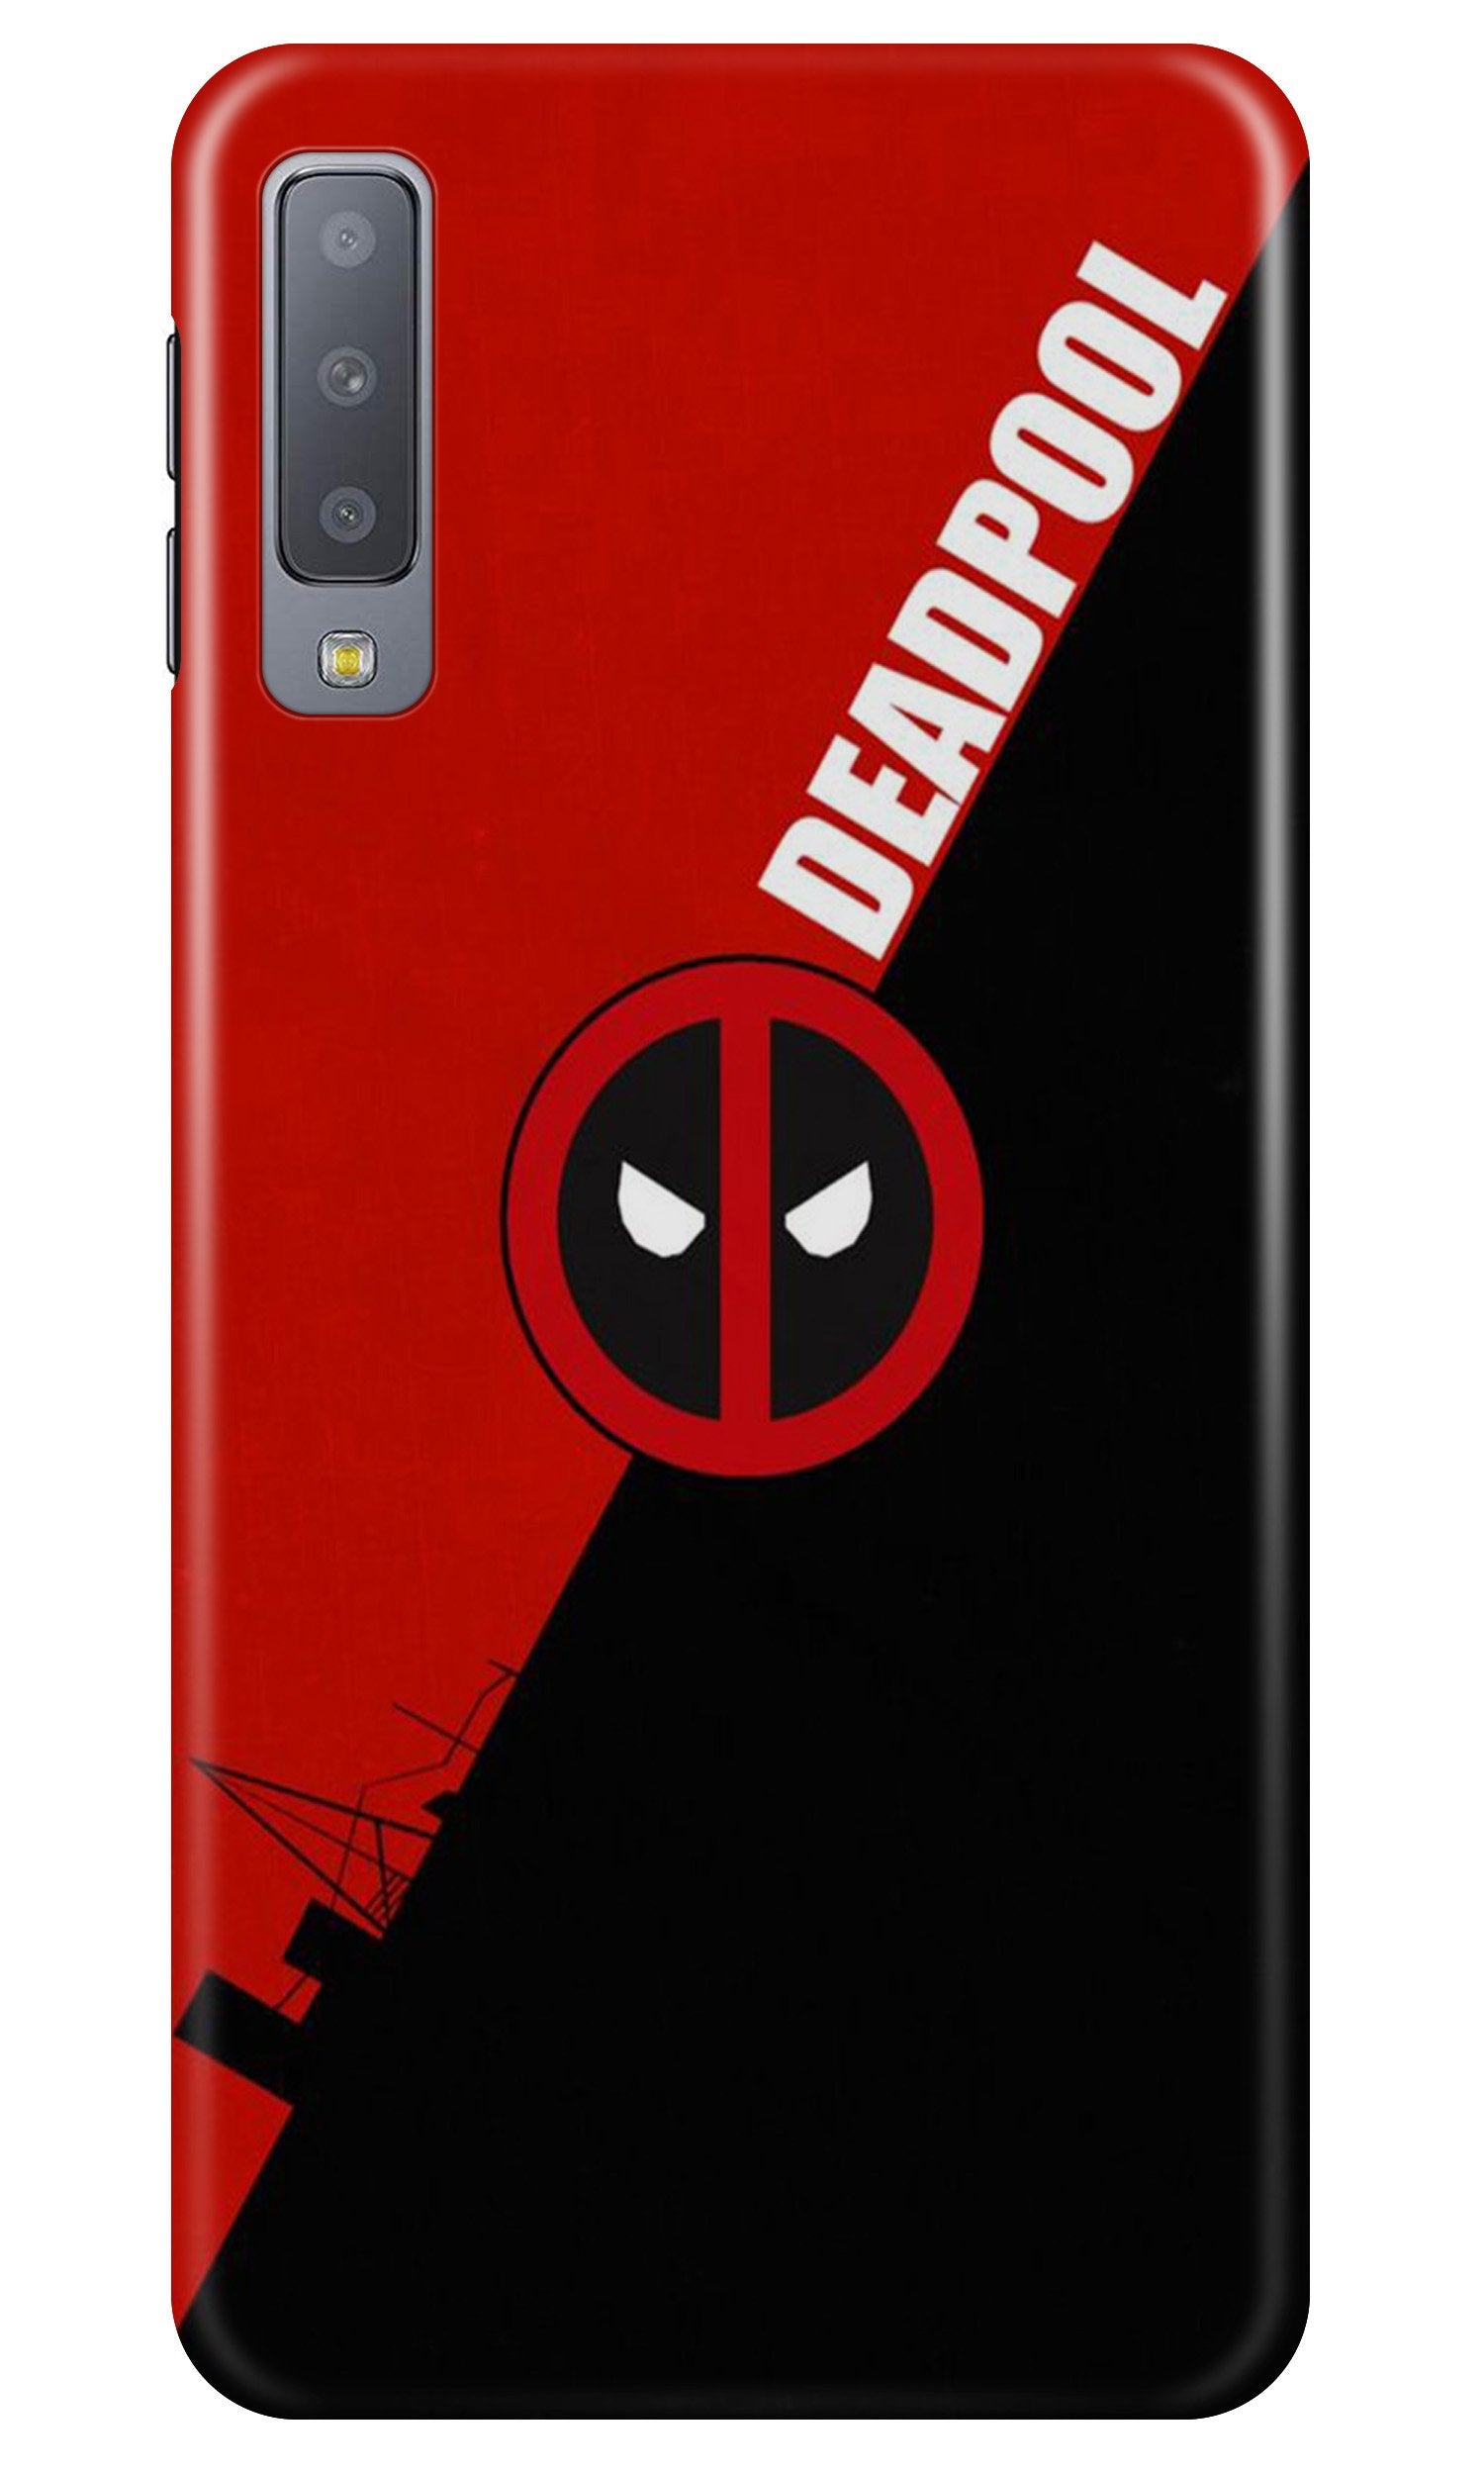 Deadpool Case for Samung Galaxy A70s (Design No. 248)